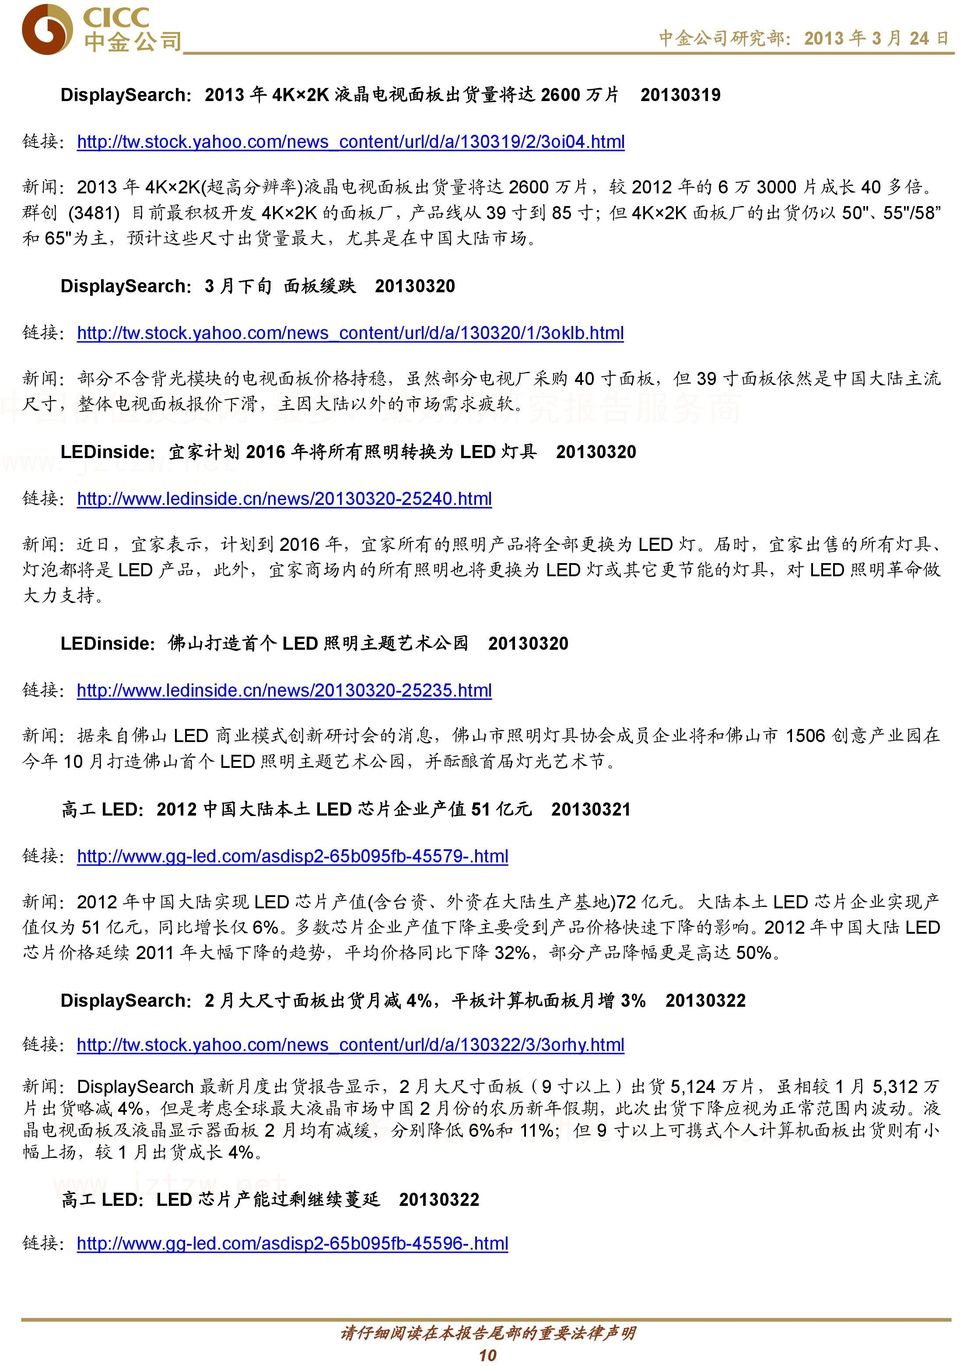 65" 为 主, 预 计 这 些 尺 寸 出 货 量 最 大, 尤 其 是 在 中 国 大 陆 市 场 DisplaySearch:3 月 下 旬 面 板 缓 跌 20130320 链 接 :http://tw.stock.yahoo.com/news_content/url/d/a/130320/1/3oklb.